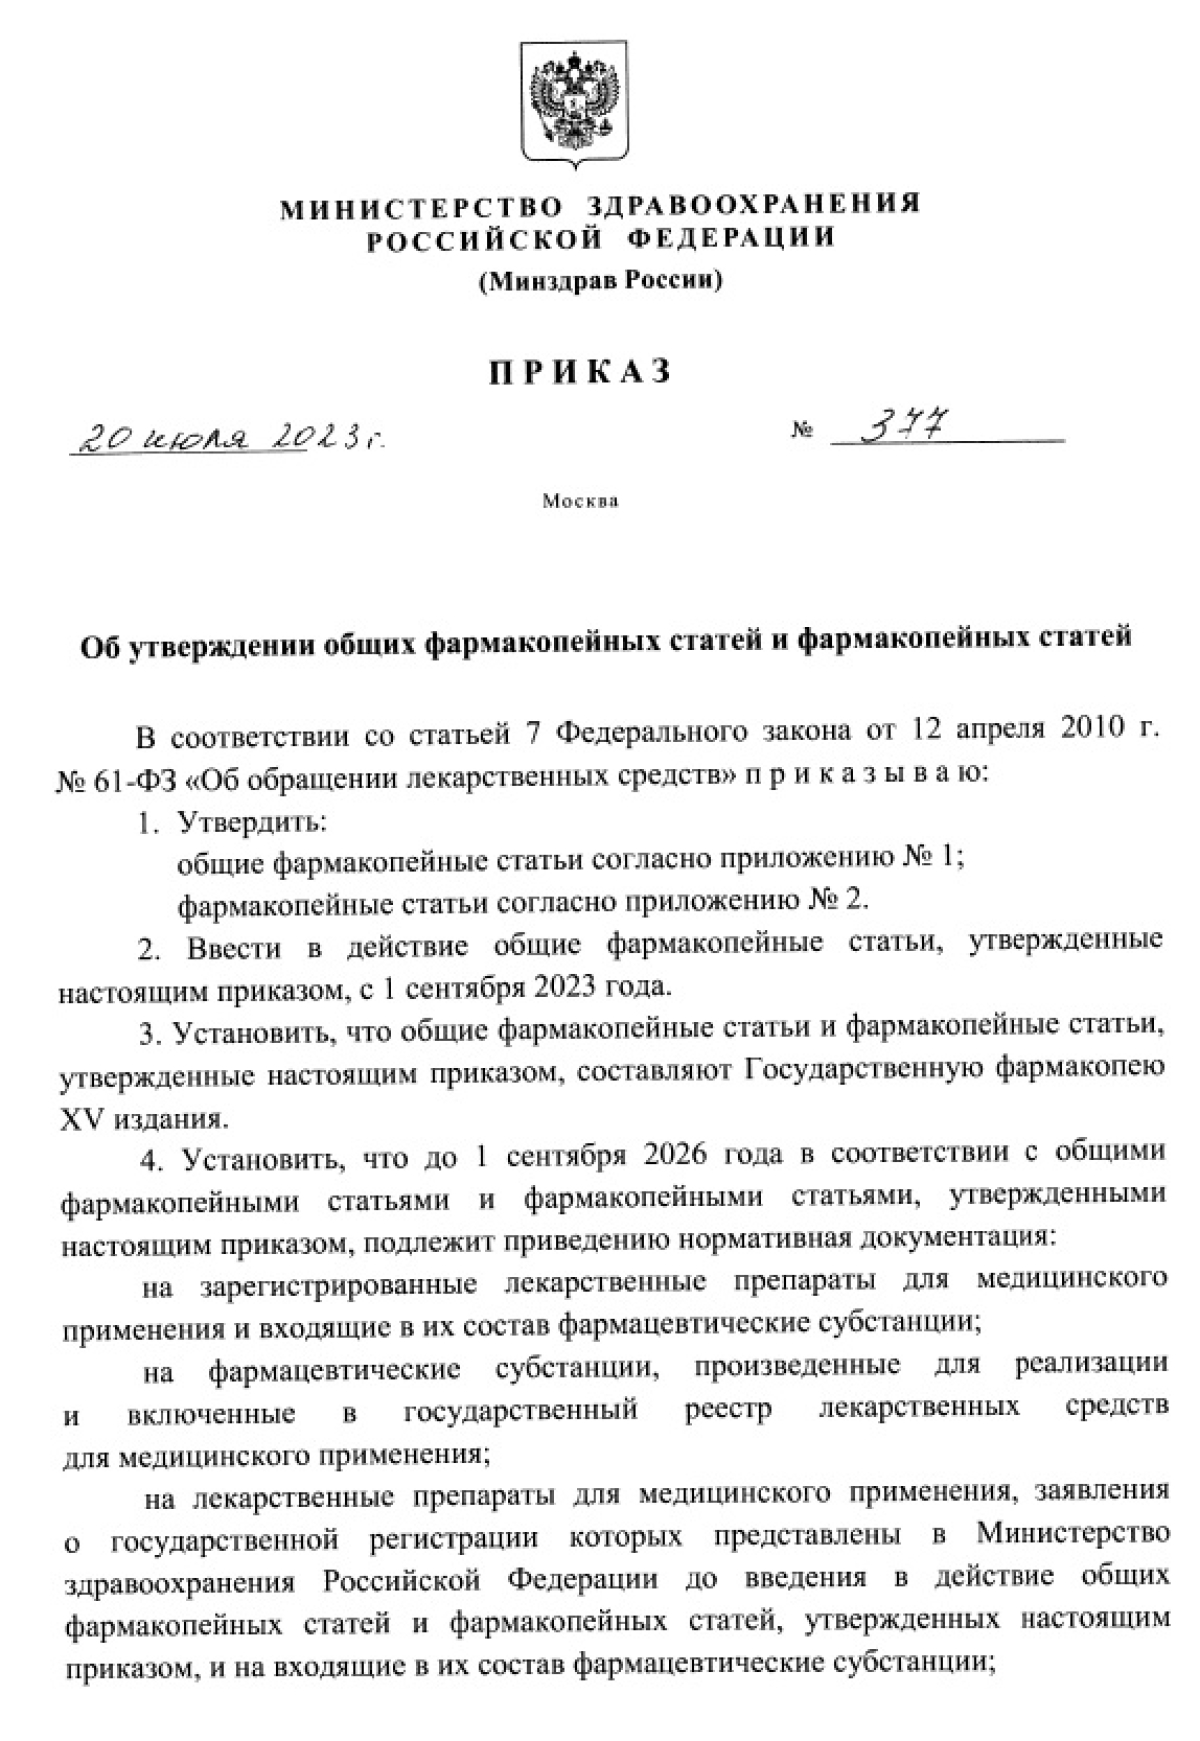 Министерство здравоохранения РФ опубликовало на своем сайте приказ о Государственной фармакопеи Российской Федерации XV издания